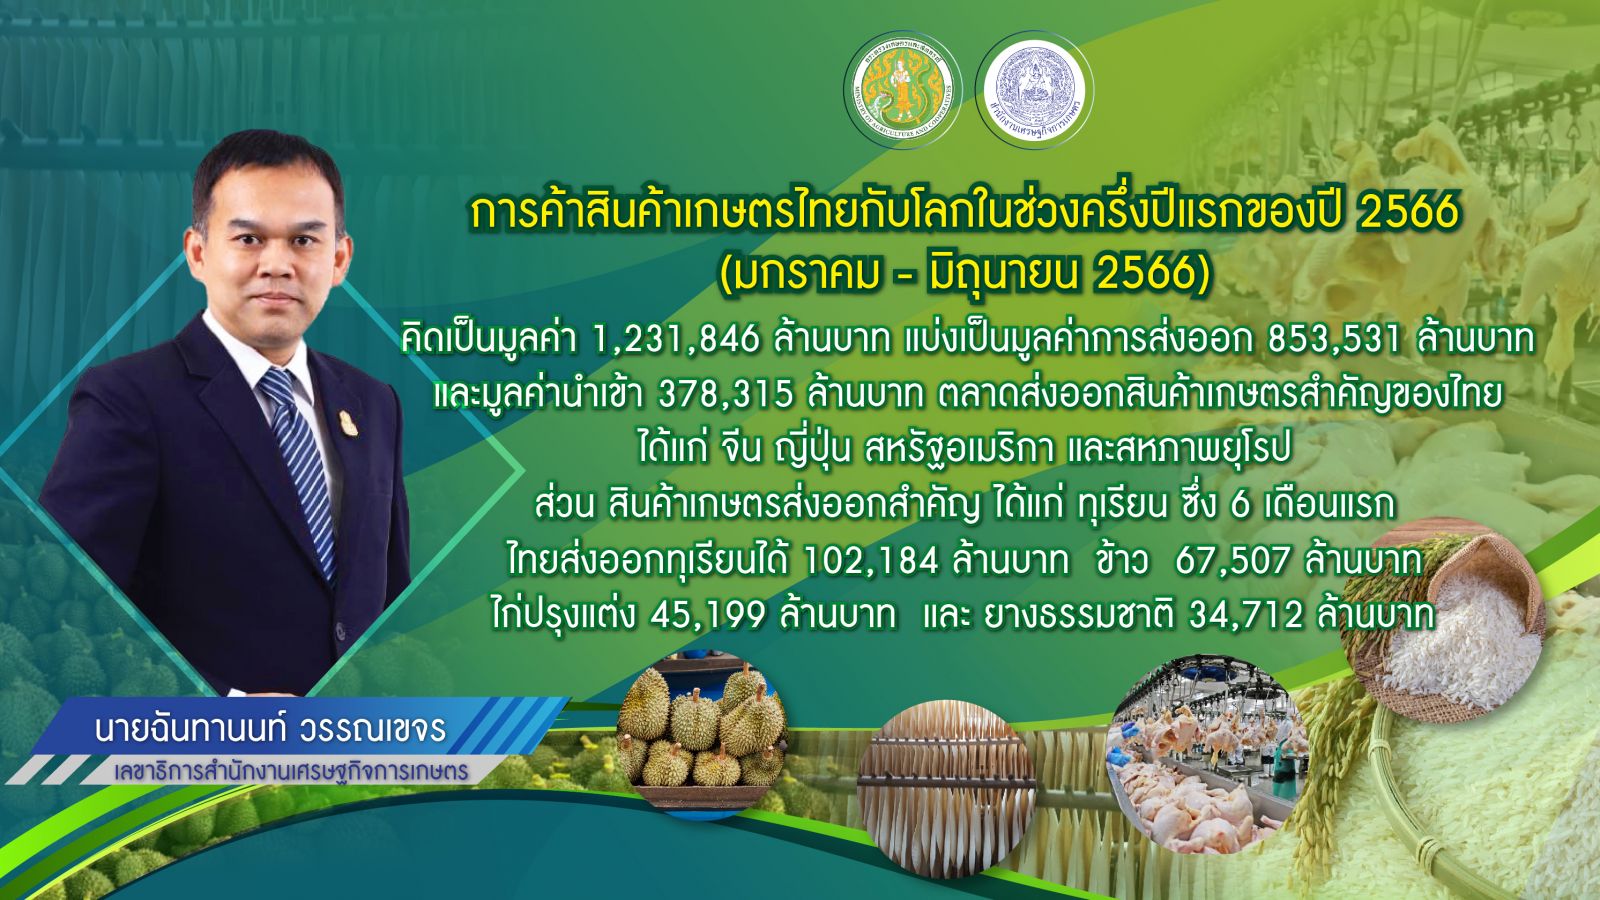 เกษตรฯ เผย สถานการณ์การค้าสินค้าเกษตรไทยช่วง 3 ปี ระบุ 6 เดือนแรกปี 66 ไทยมีมูลค่าการค้ากับโลก 1.231 ล้านล้านบาท โดยเป็นมูลค่าส่งออก 8.53 แสนล้านบาท